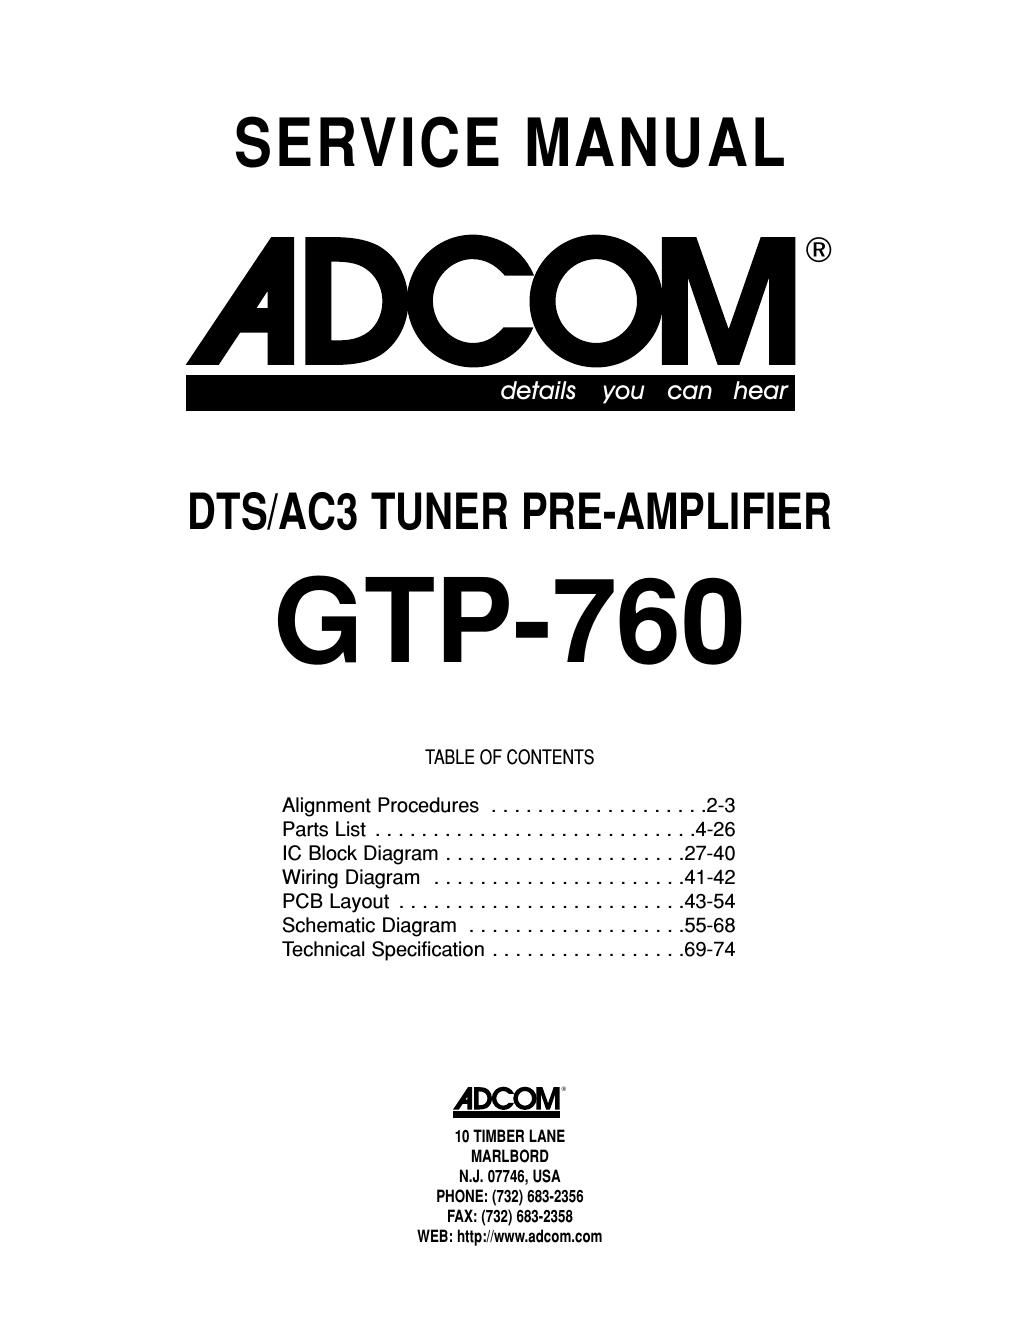 adcom gtp 760 service manual